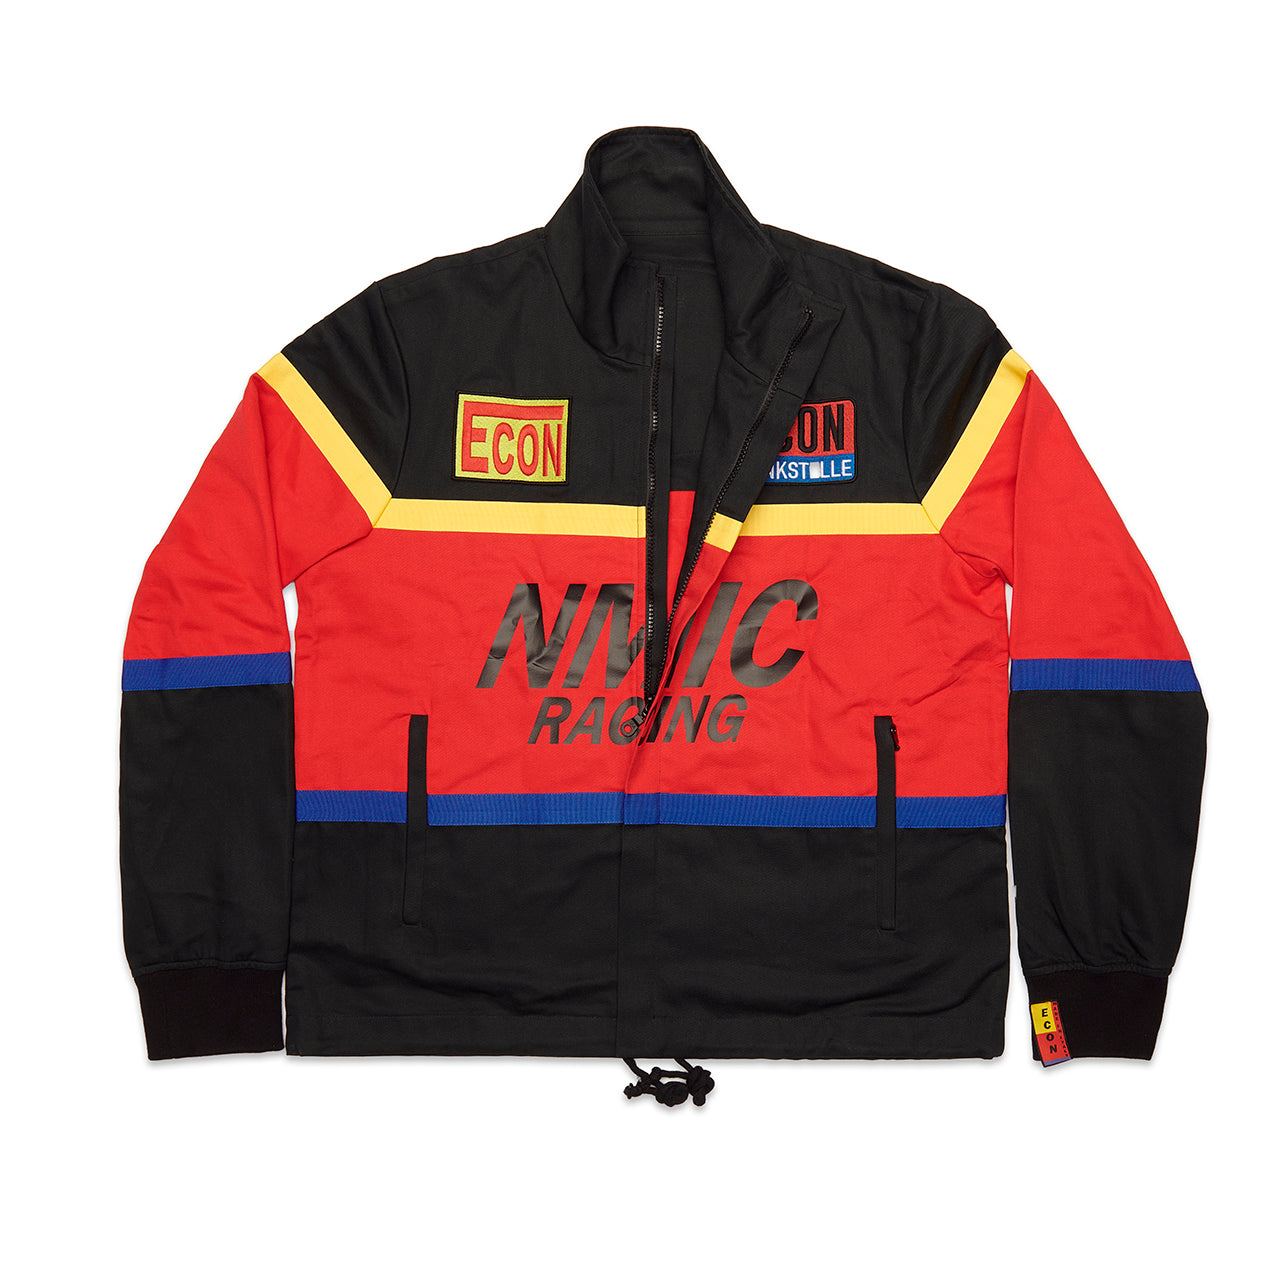 The Vintage racing jacket